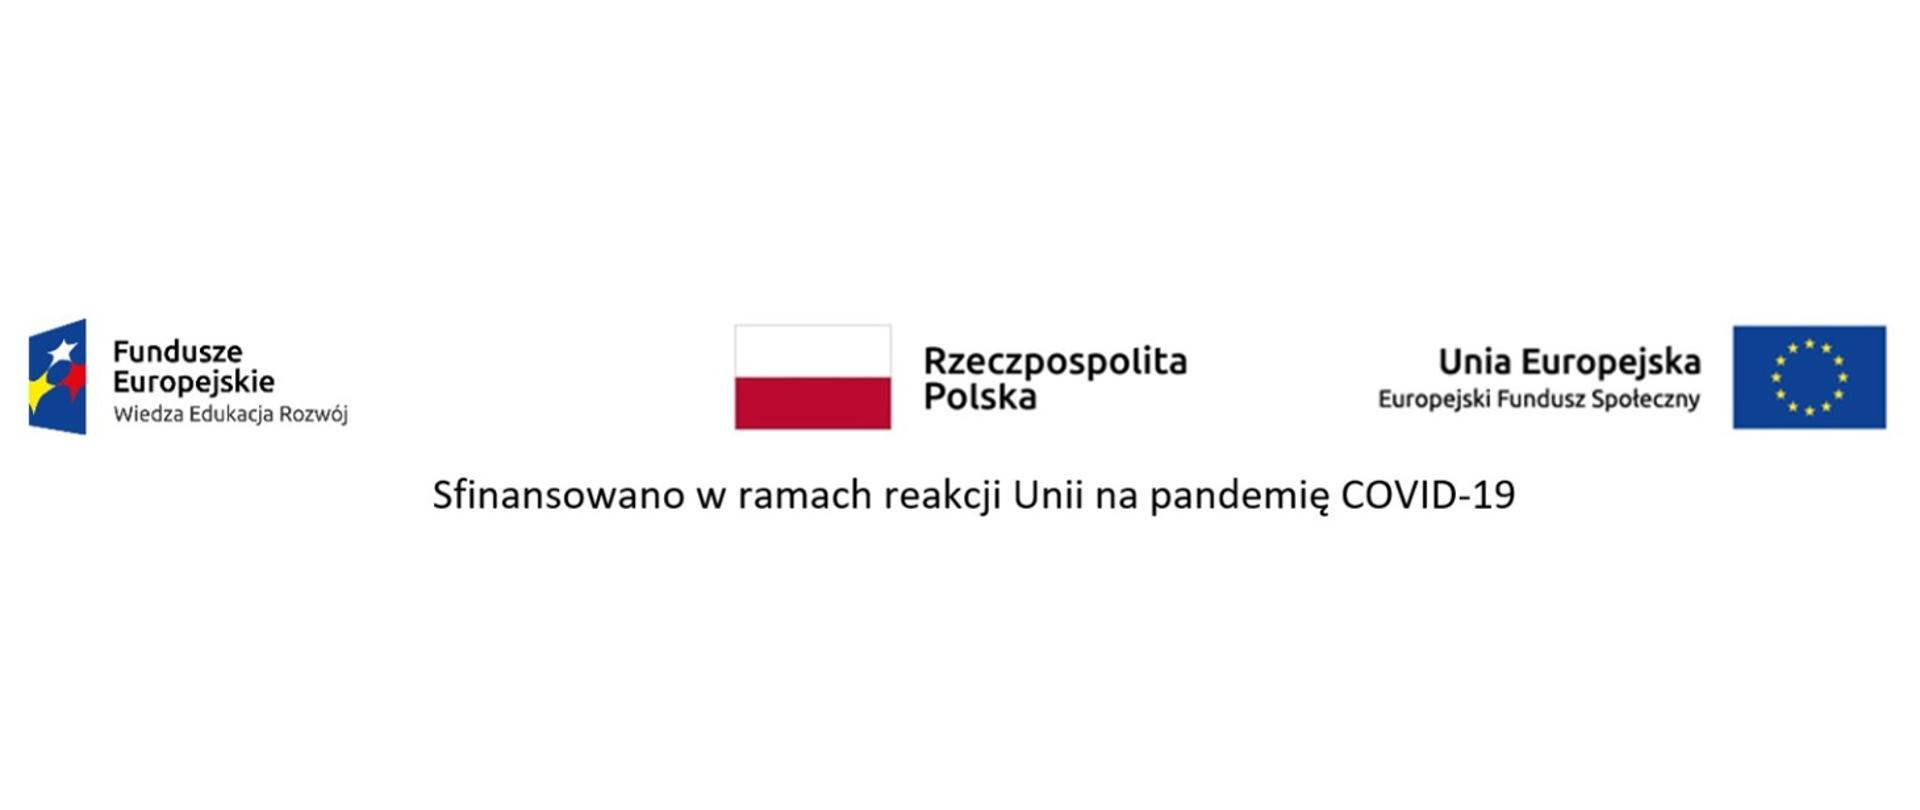 Logotypy: Fundusze Europejskie, Rzeczpospolita Polska, Unia Europejska 